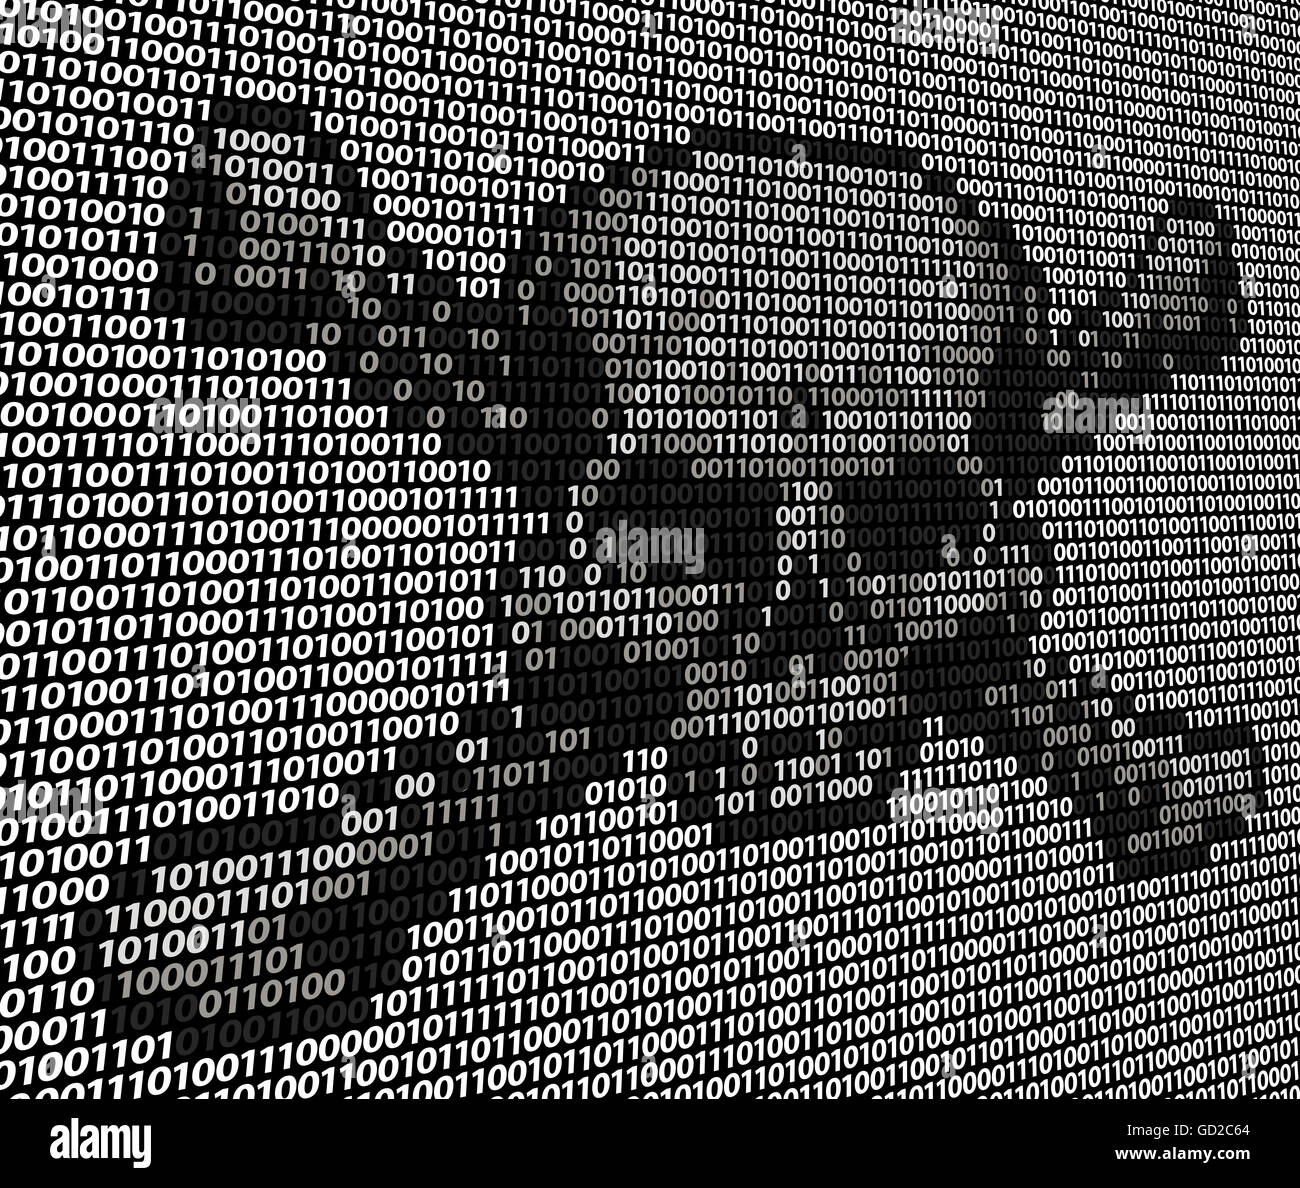 Schädel und gekreuzten Knochen Gefahr oder Piraterie Zeichen bestehend aus binären Einsen und Nullen Computercode. Konzept für Online-Piraterie, hacken Stockfoto